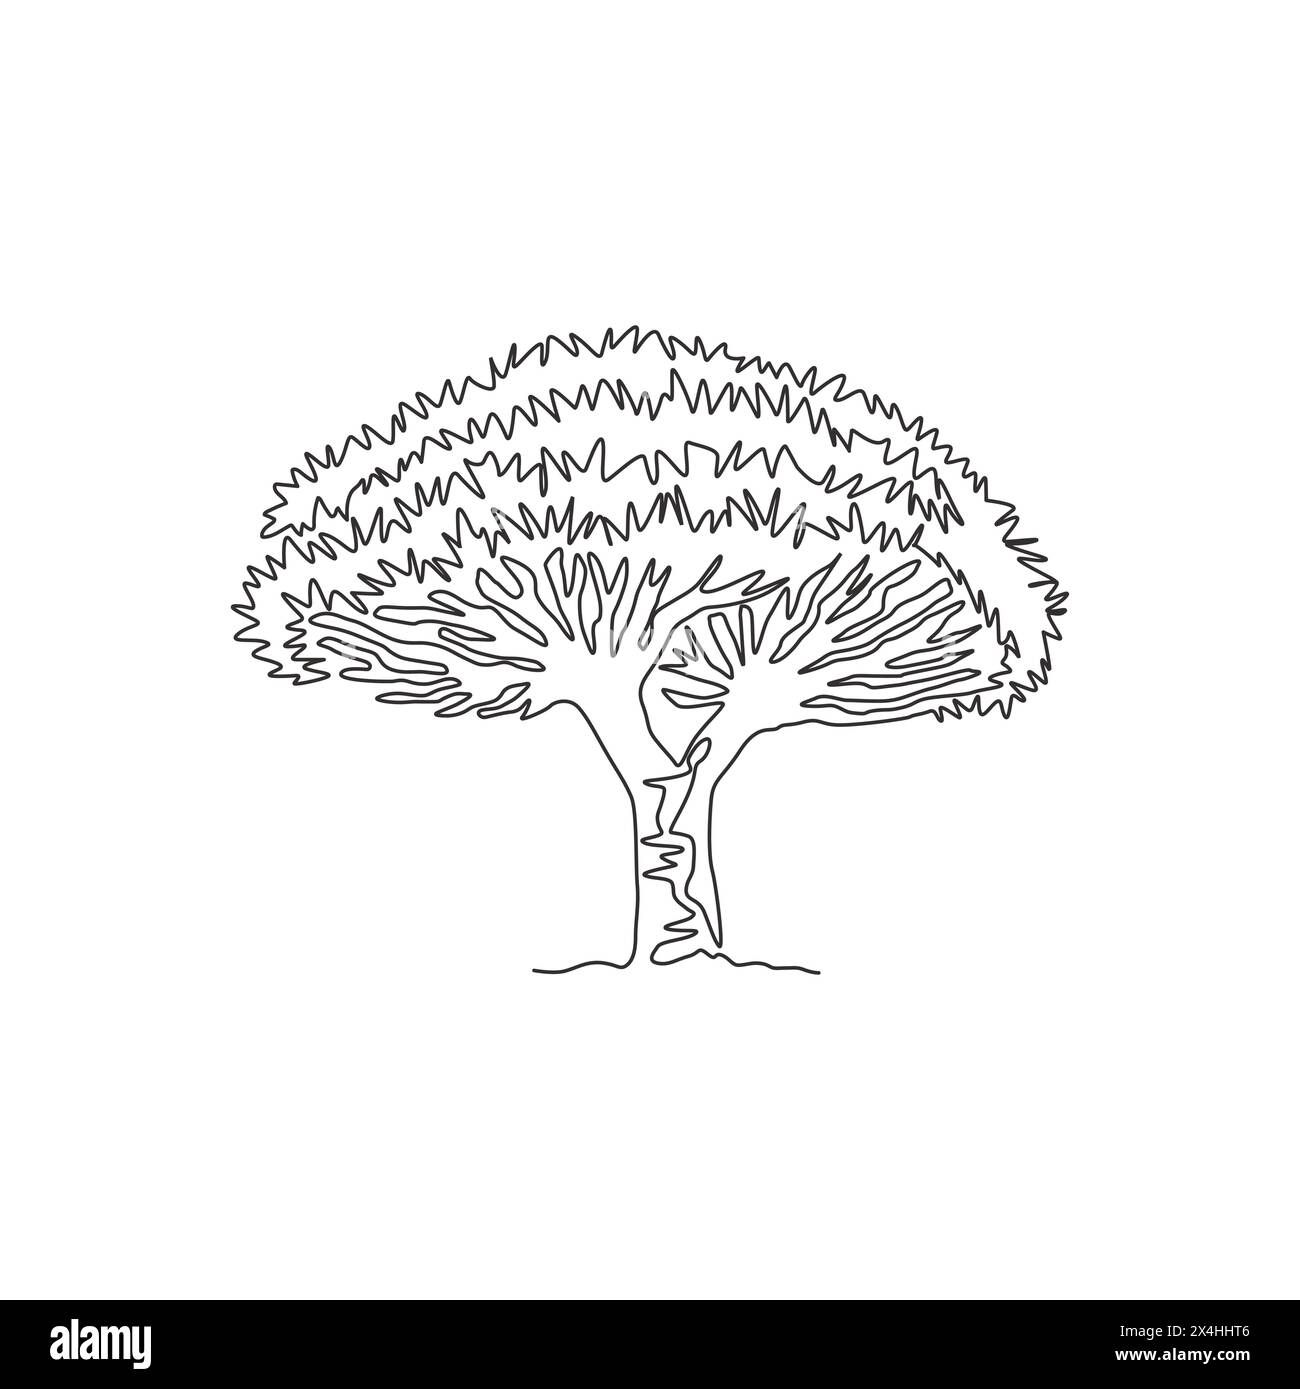 Un dessin en ligne continue de beauté et exotique arbre dragon socotra. Concept décoratif d'arbre de sang de dragon pour la campagne de voyage et de tourisme. Péché à la mode Illustration de Vecteur